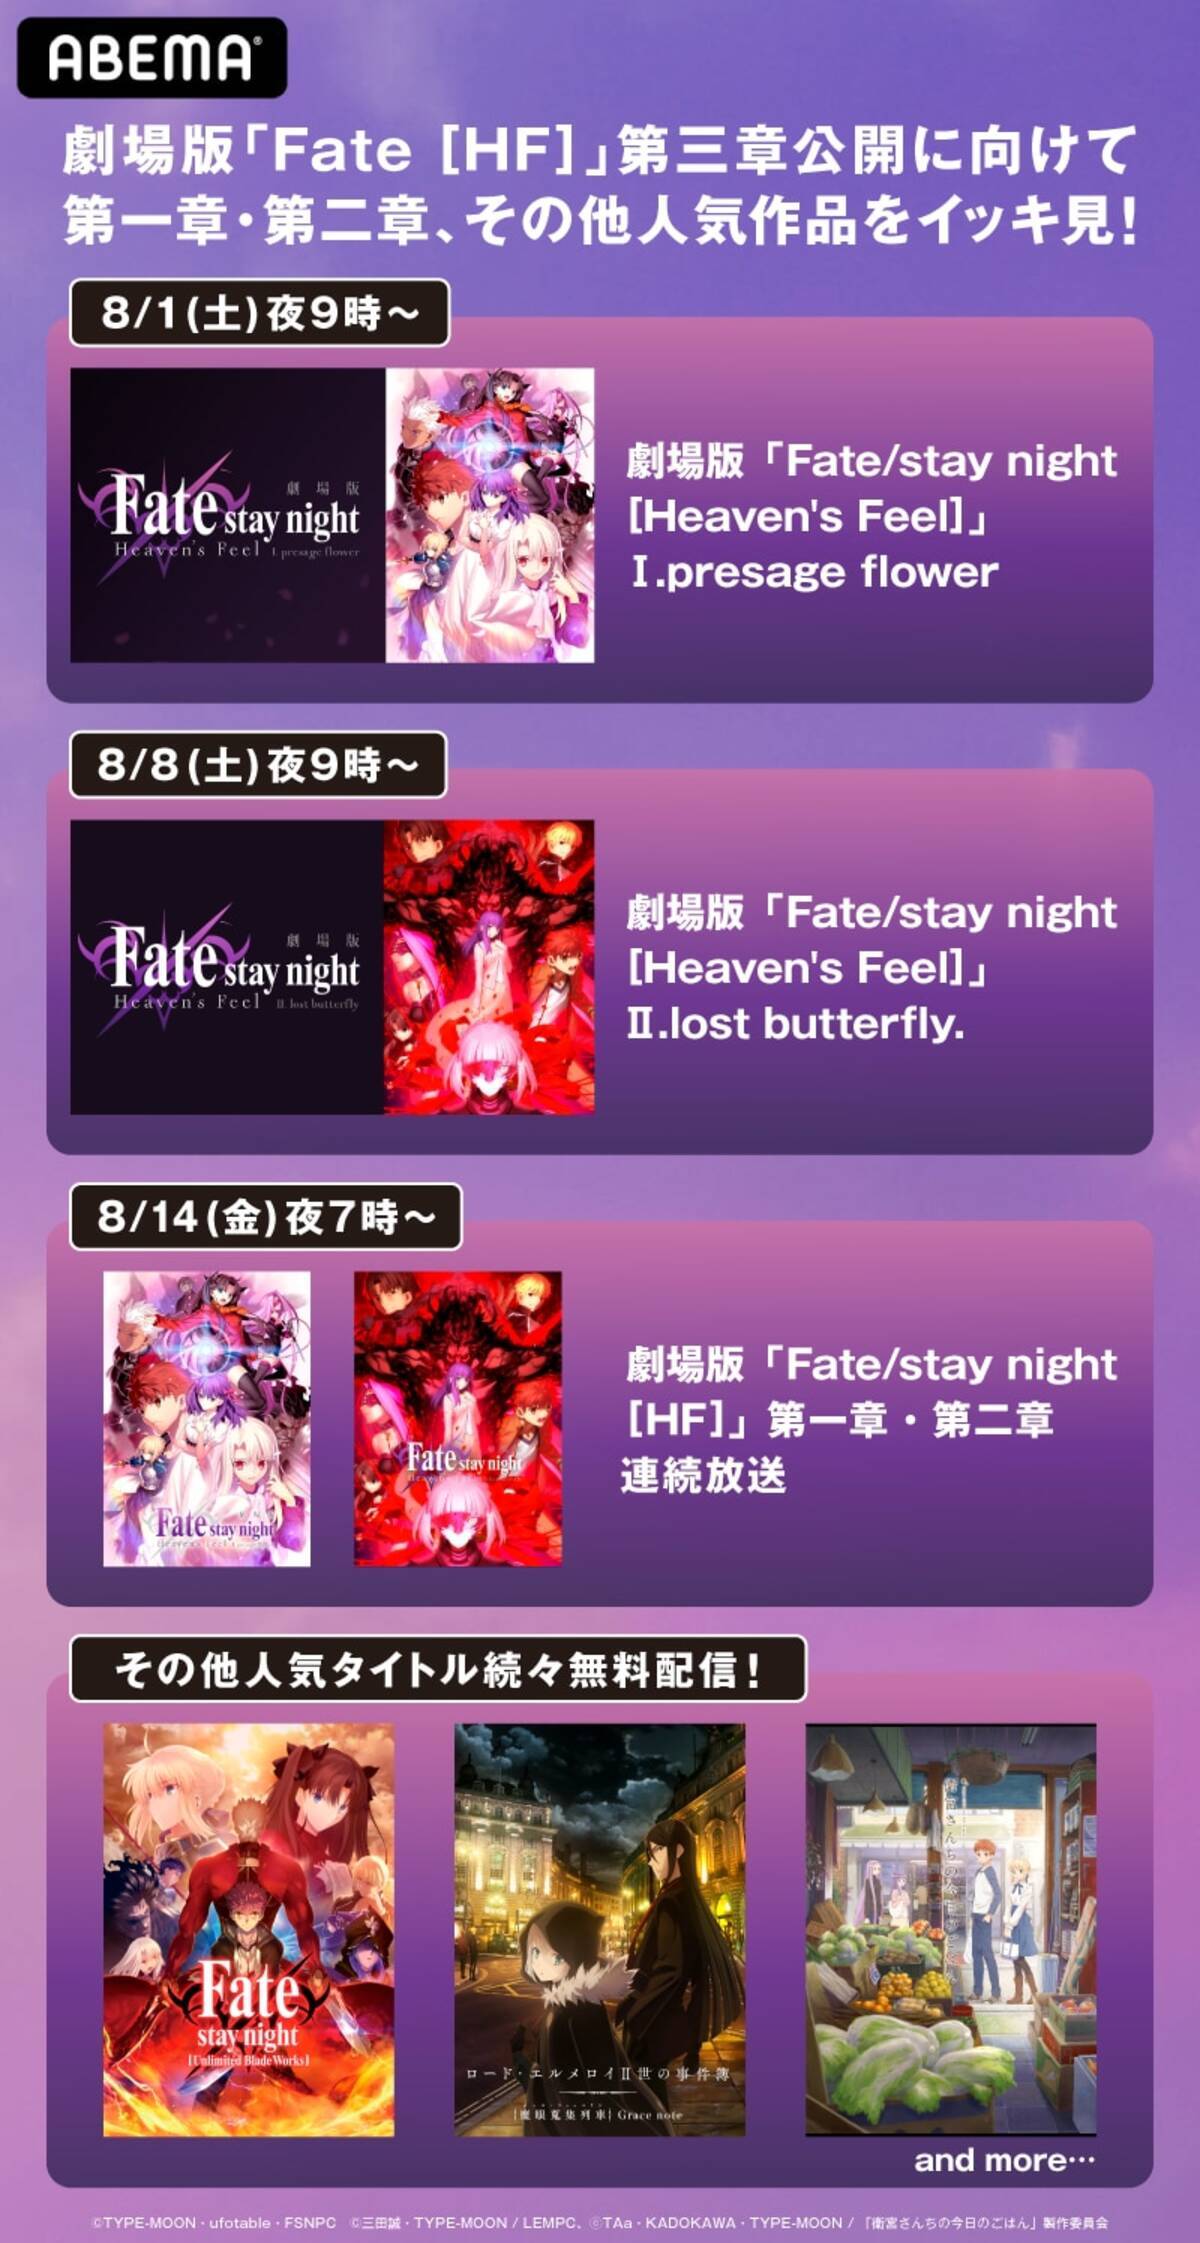 劇場版 Fate Stay Night Hf 公開記念 第一章 第二章無料配信決定 年7月23日 エキサイトニュース